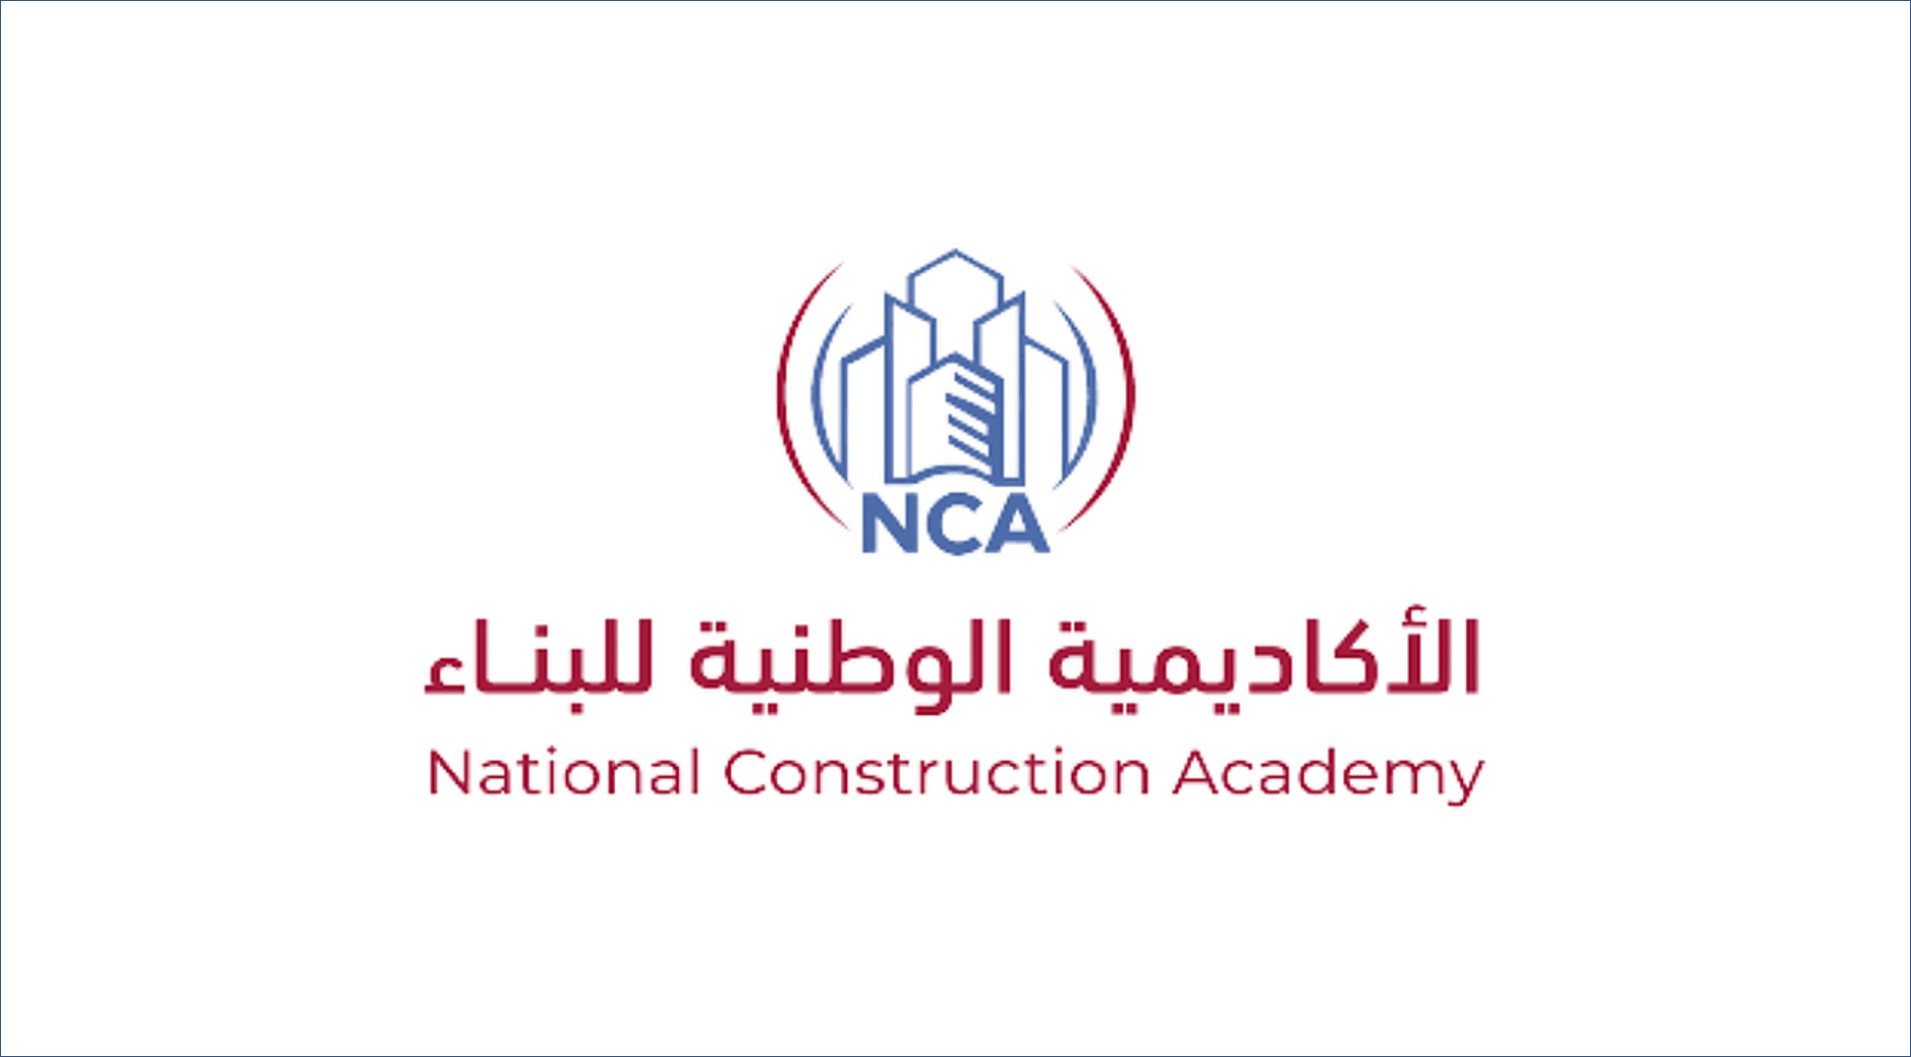 الأكاديمية الوطنية للبناء تعلن عن برنامج مبتدئ بالتوظيف